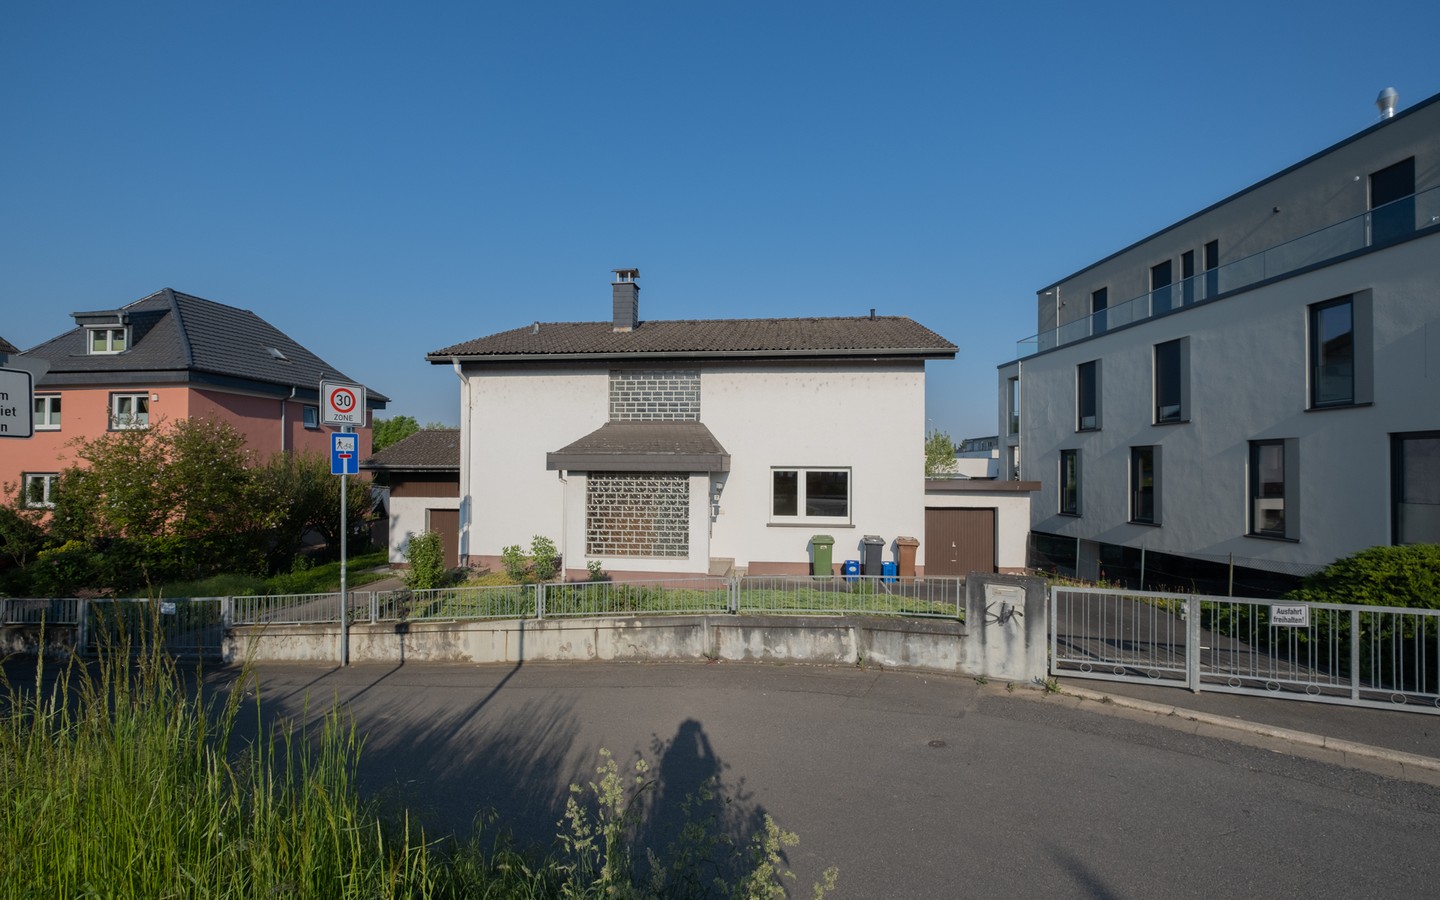 Hausfront - Leimen: freistehendes Haus in Splitlevelbauweise, mit 2 Garagen, 2 Stellplätzen und Garten